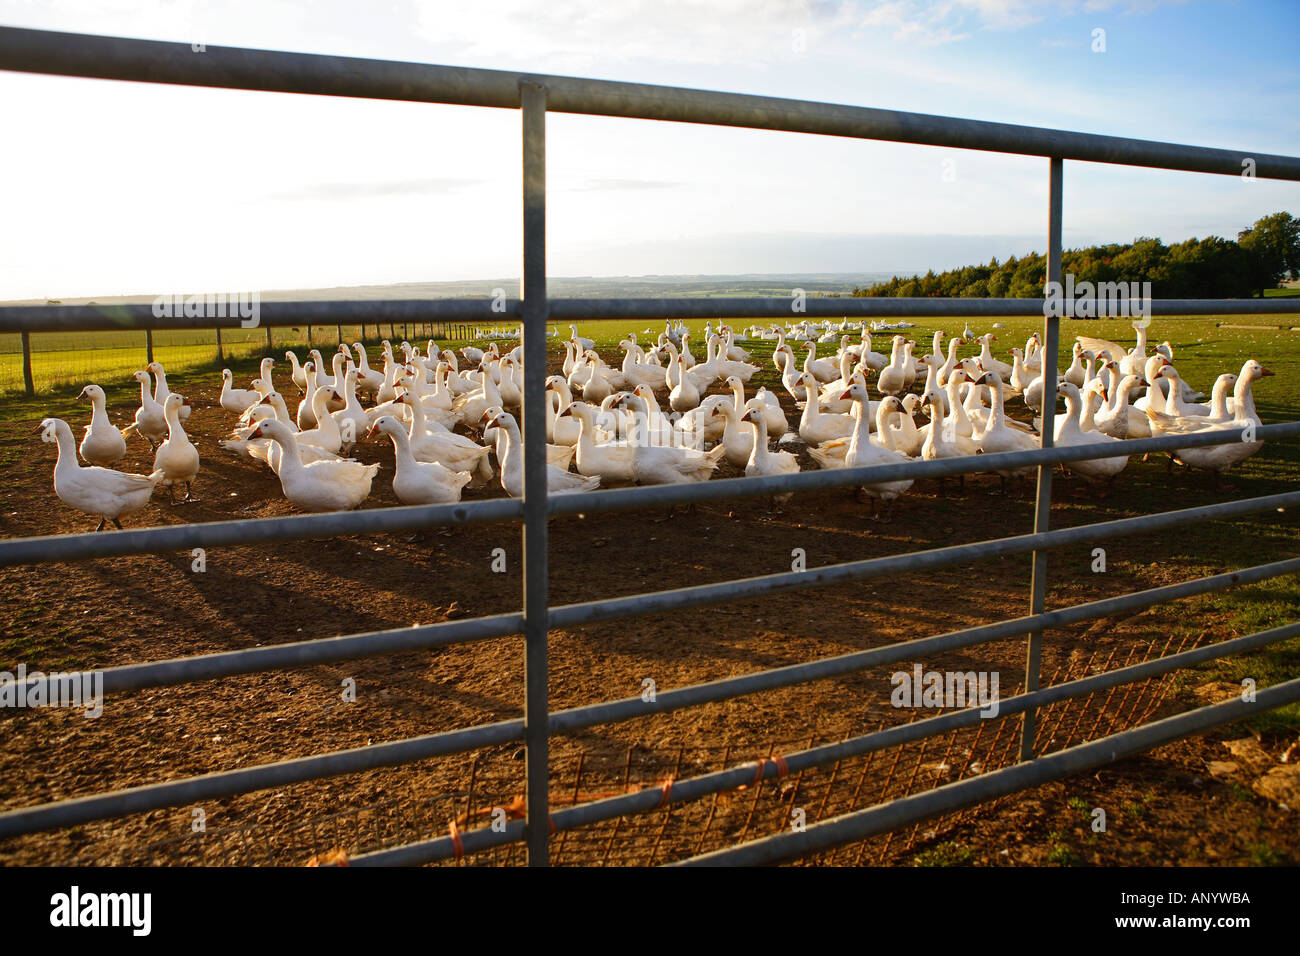 Gänse auf dem Bauernhof Oxfordshire Großbritannien freie Auswahl Vögel gefährdet sein könnte, wenn die Vogelgrippe Vogelgrippe-Virus-Grippe breitet sich Stockfoto